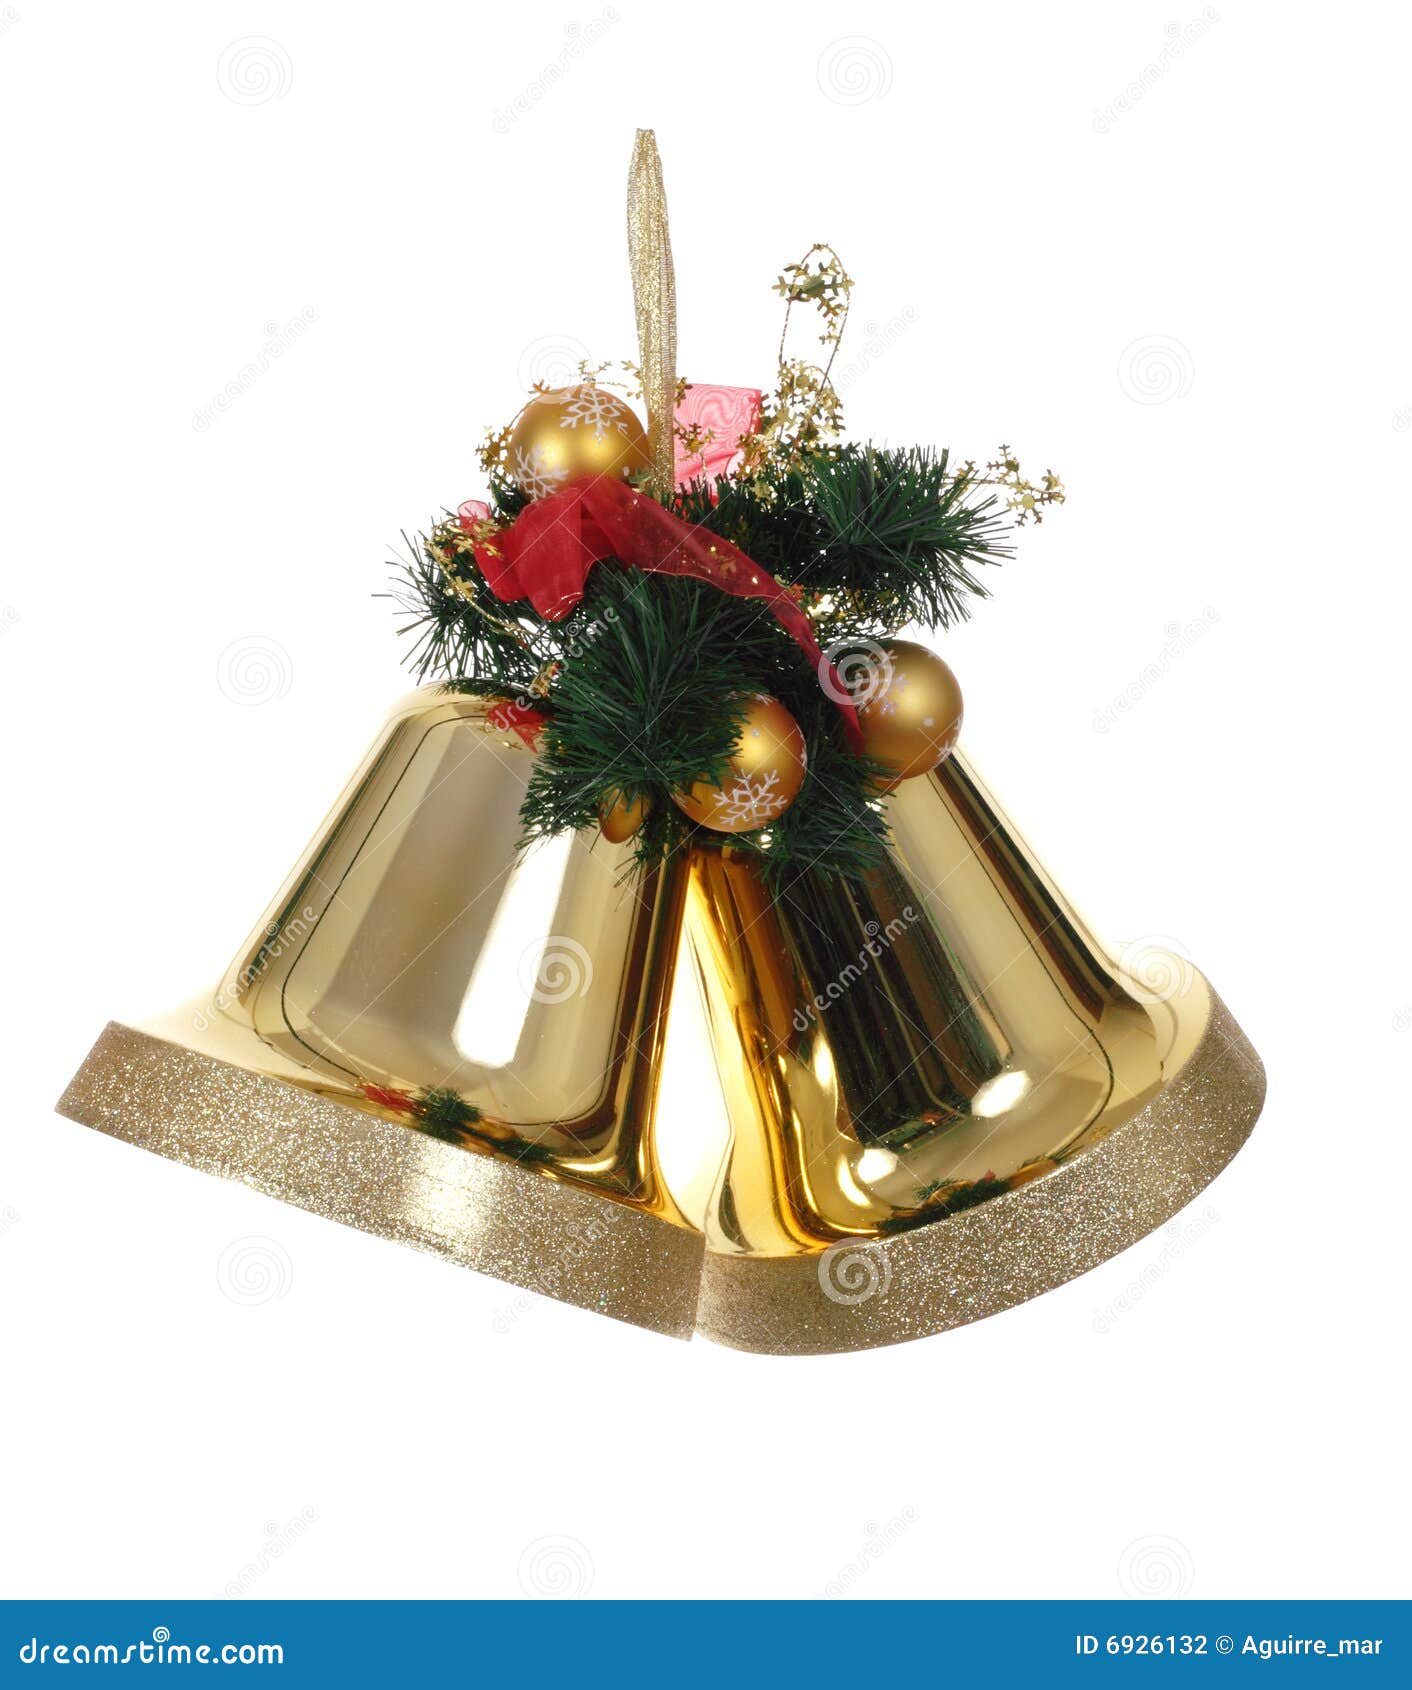 可用的响铃圣诞节例证向量 库存图片. 图片 包括有 金属, 背包, 仍然, 空白, 发光, 圣诞节, 生活 - 65214423